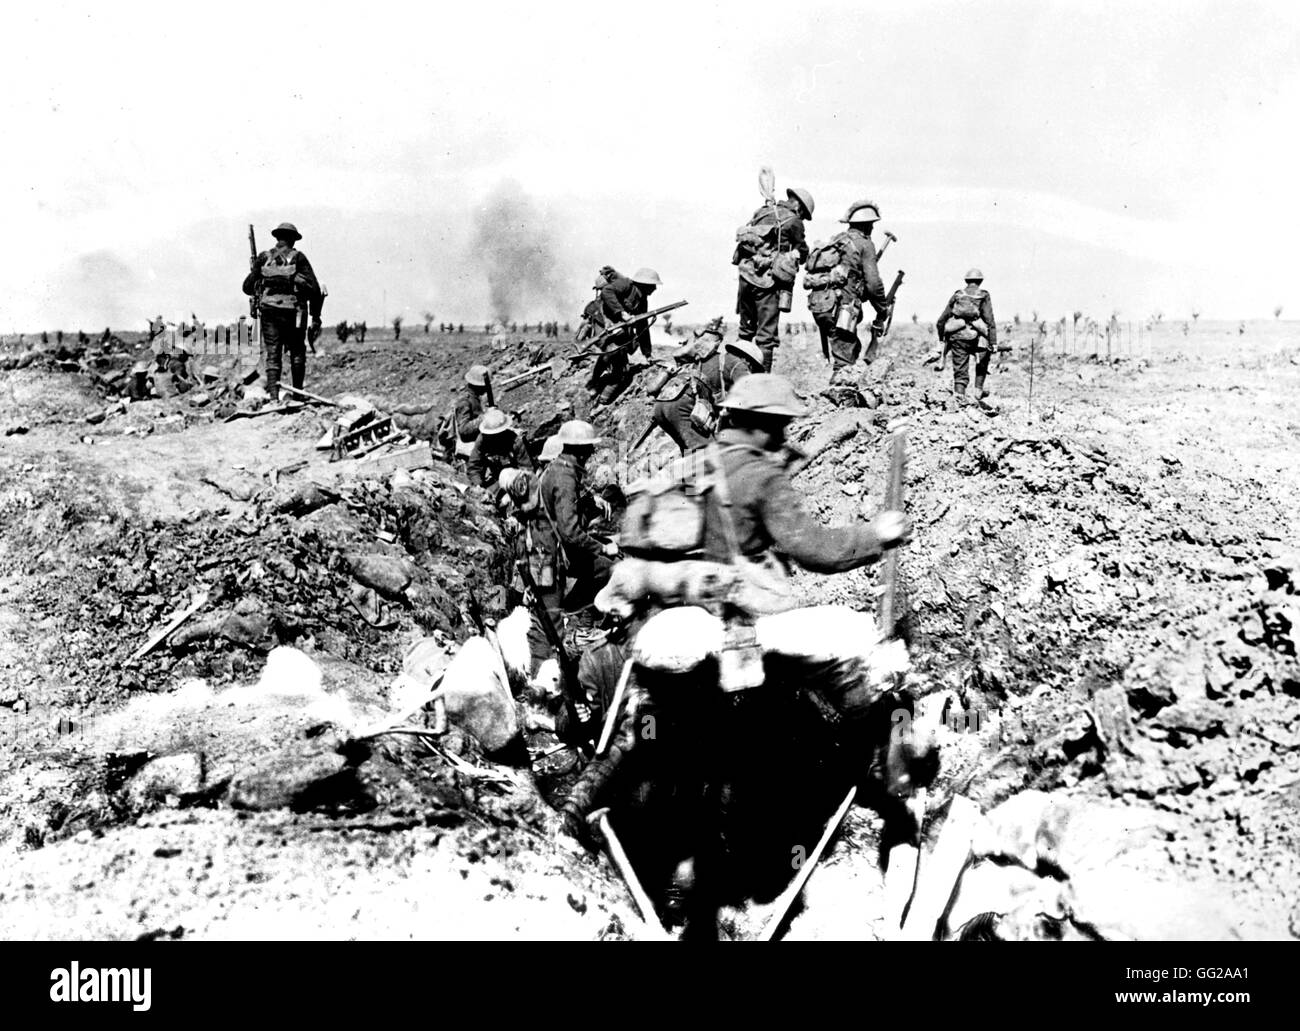 Les troupes britanniques pendant la bataille de Morval Septembre 1916 La Première Guerre mondiale, l'Imperial War Museum de Londres Banque D'Images